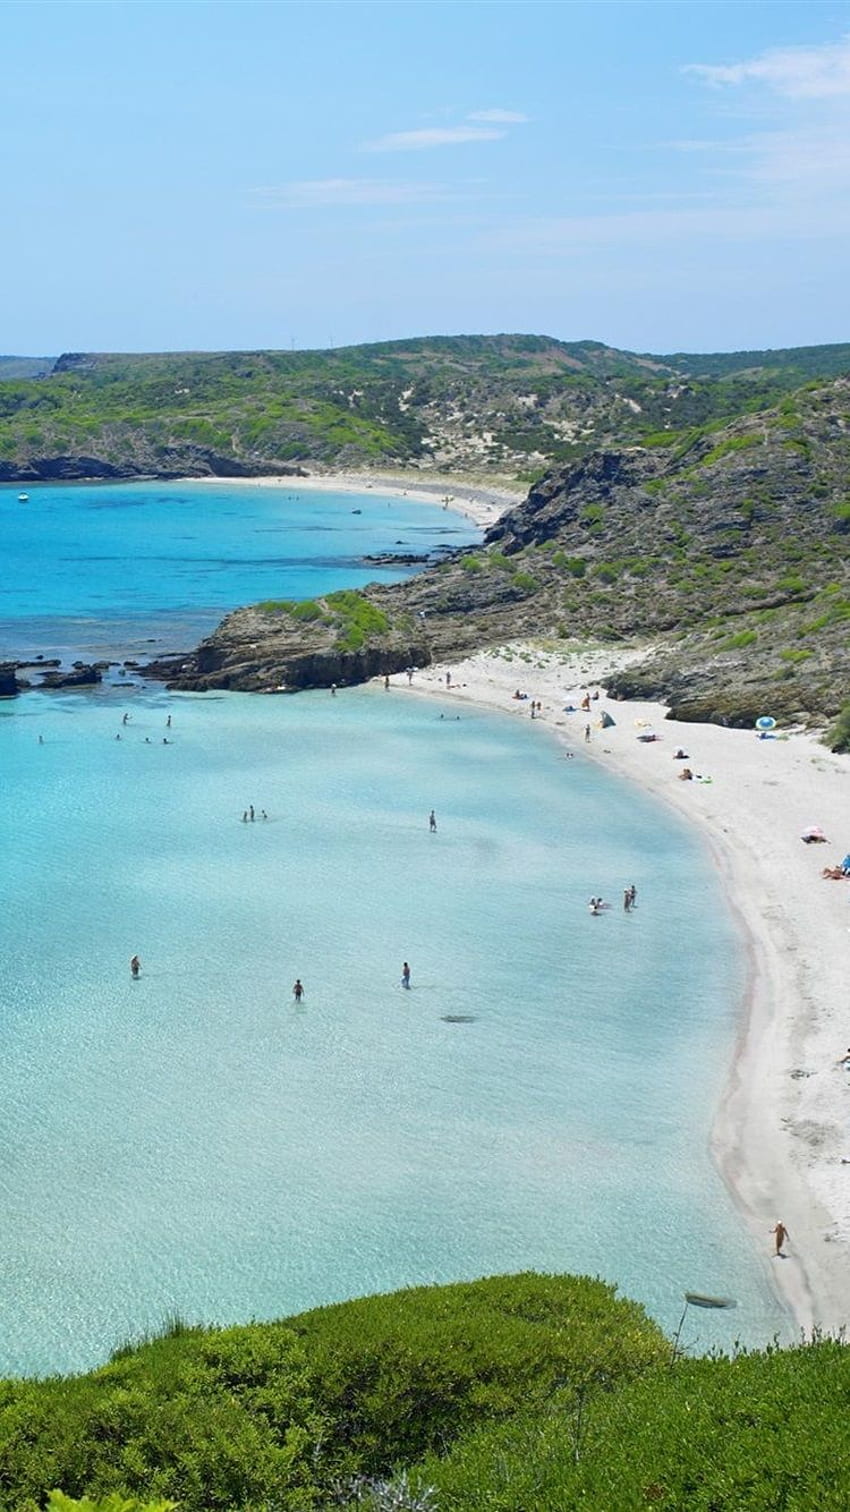 Beach, blue sea, hiking pedestrian, Spain, Menorca iPhone HD phone wallpaper